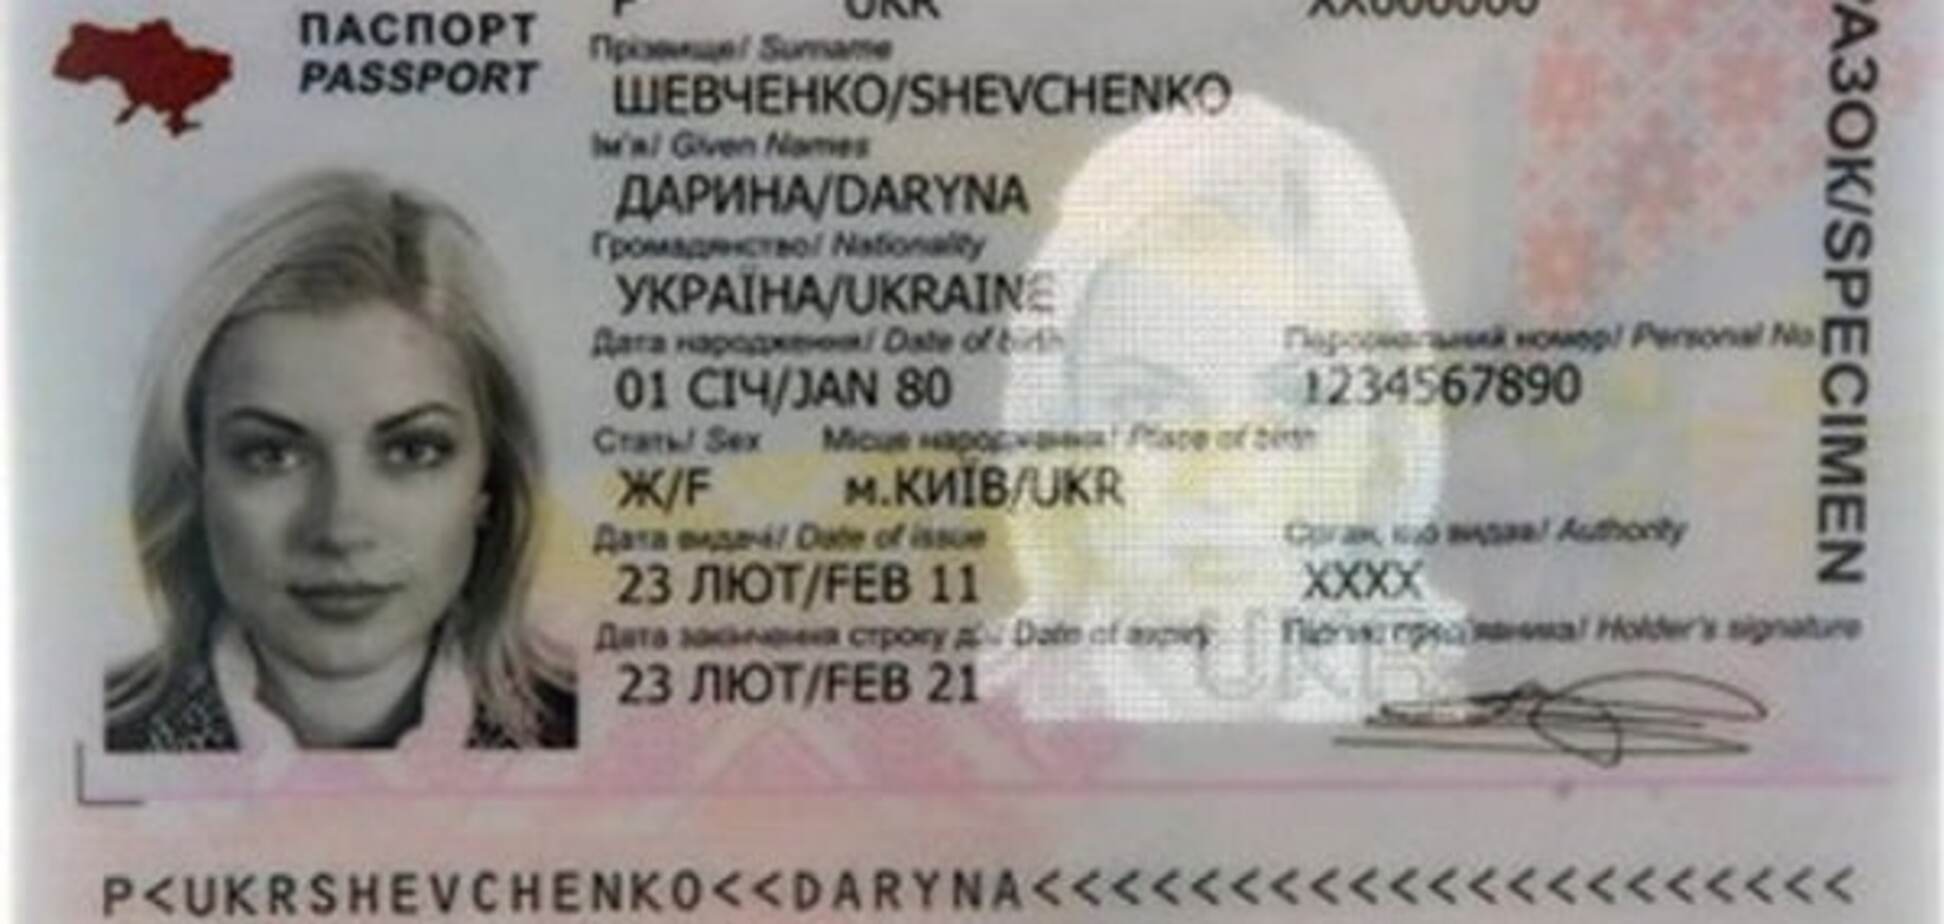 ID-картки замість паспортів: що потрібно знати про нові документи. Інфографіка